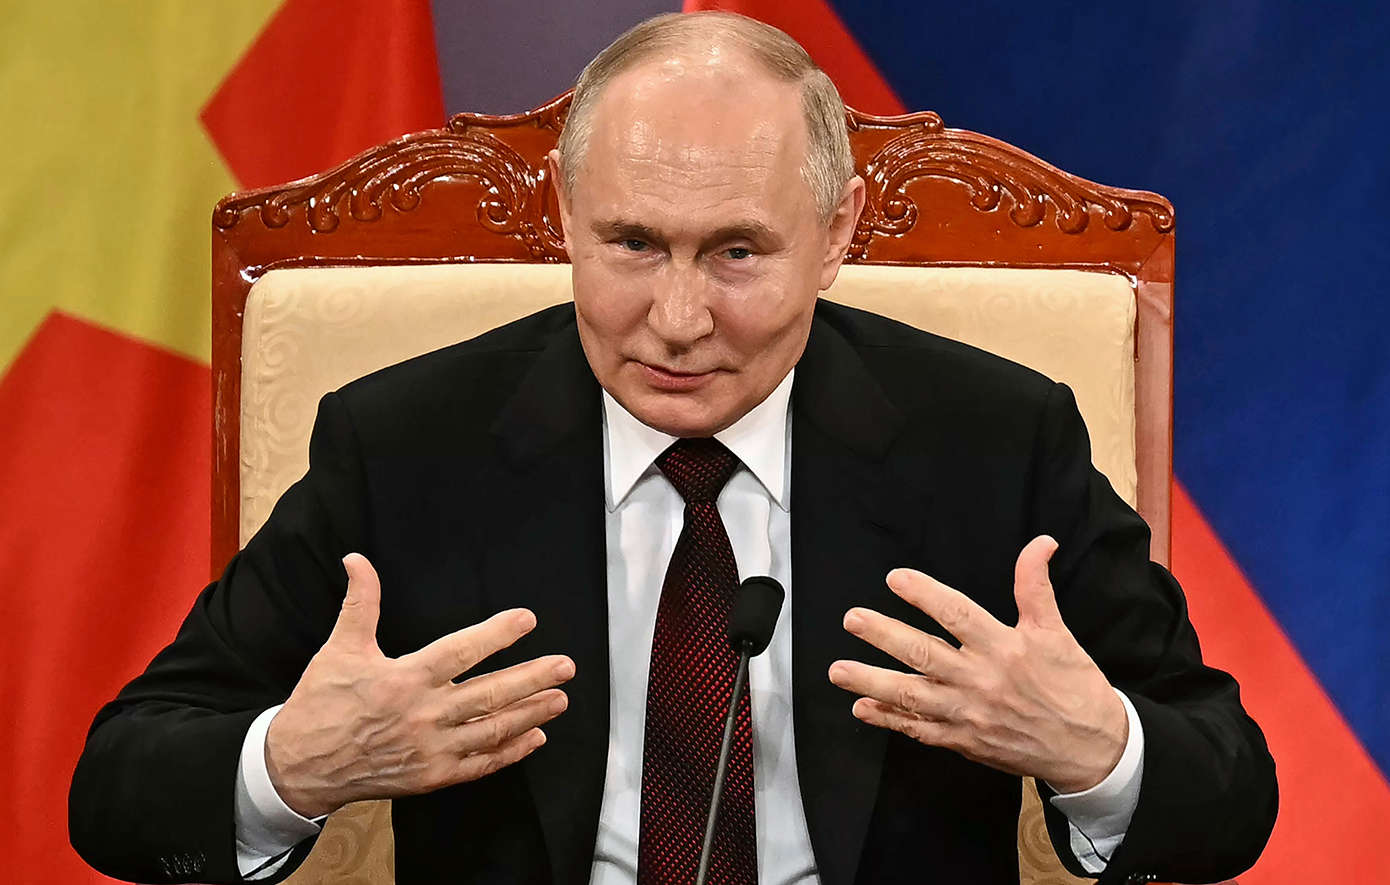 Ο Πούτιν με τη διπλωματία των πυρηνικών επεκτείνει τη ρωσική επιρροή